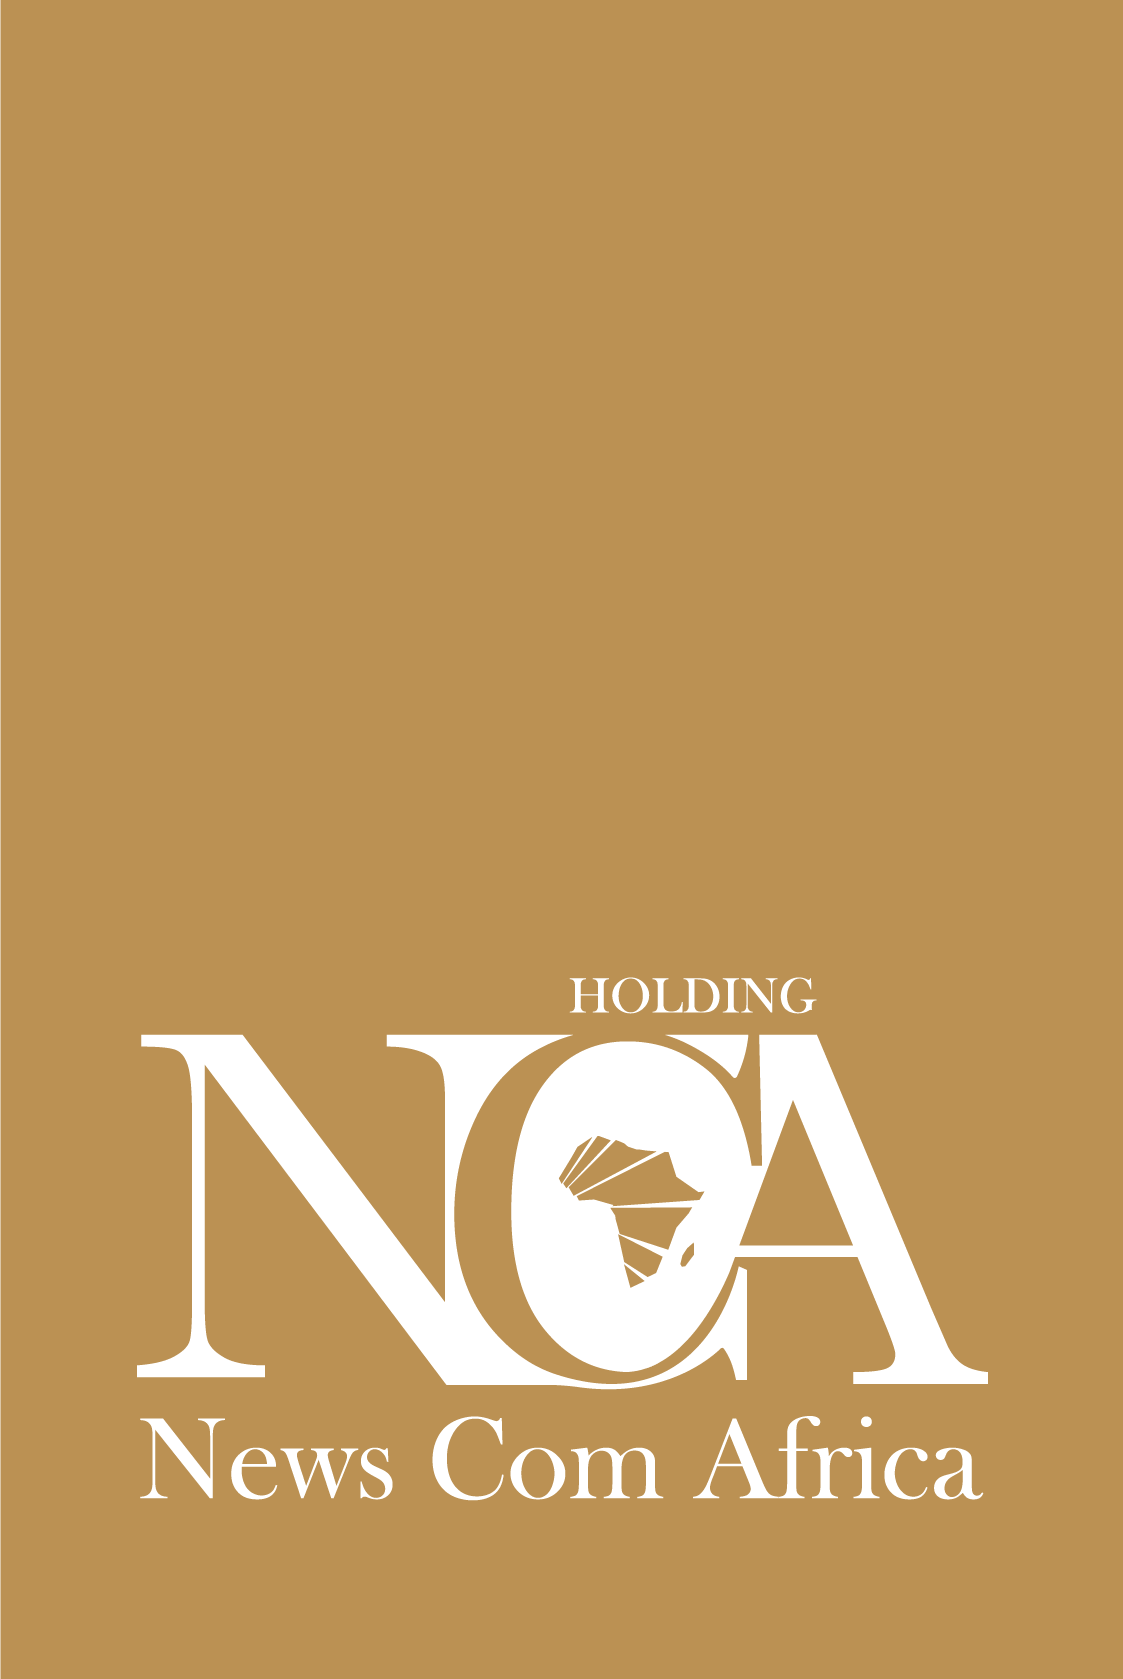 News Com Africa (NCA Holding)